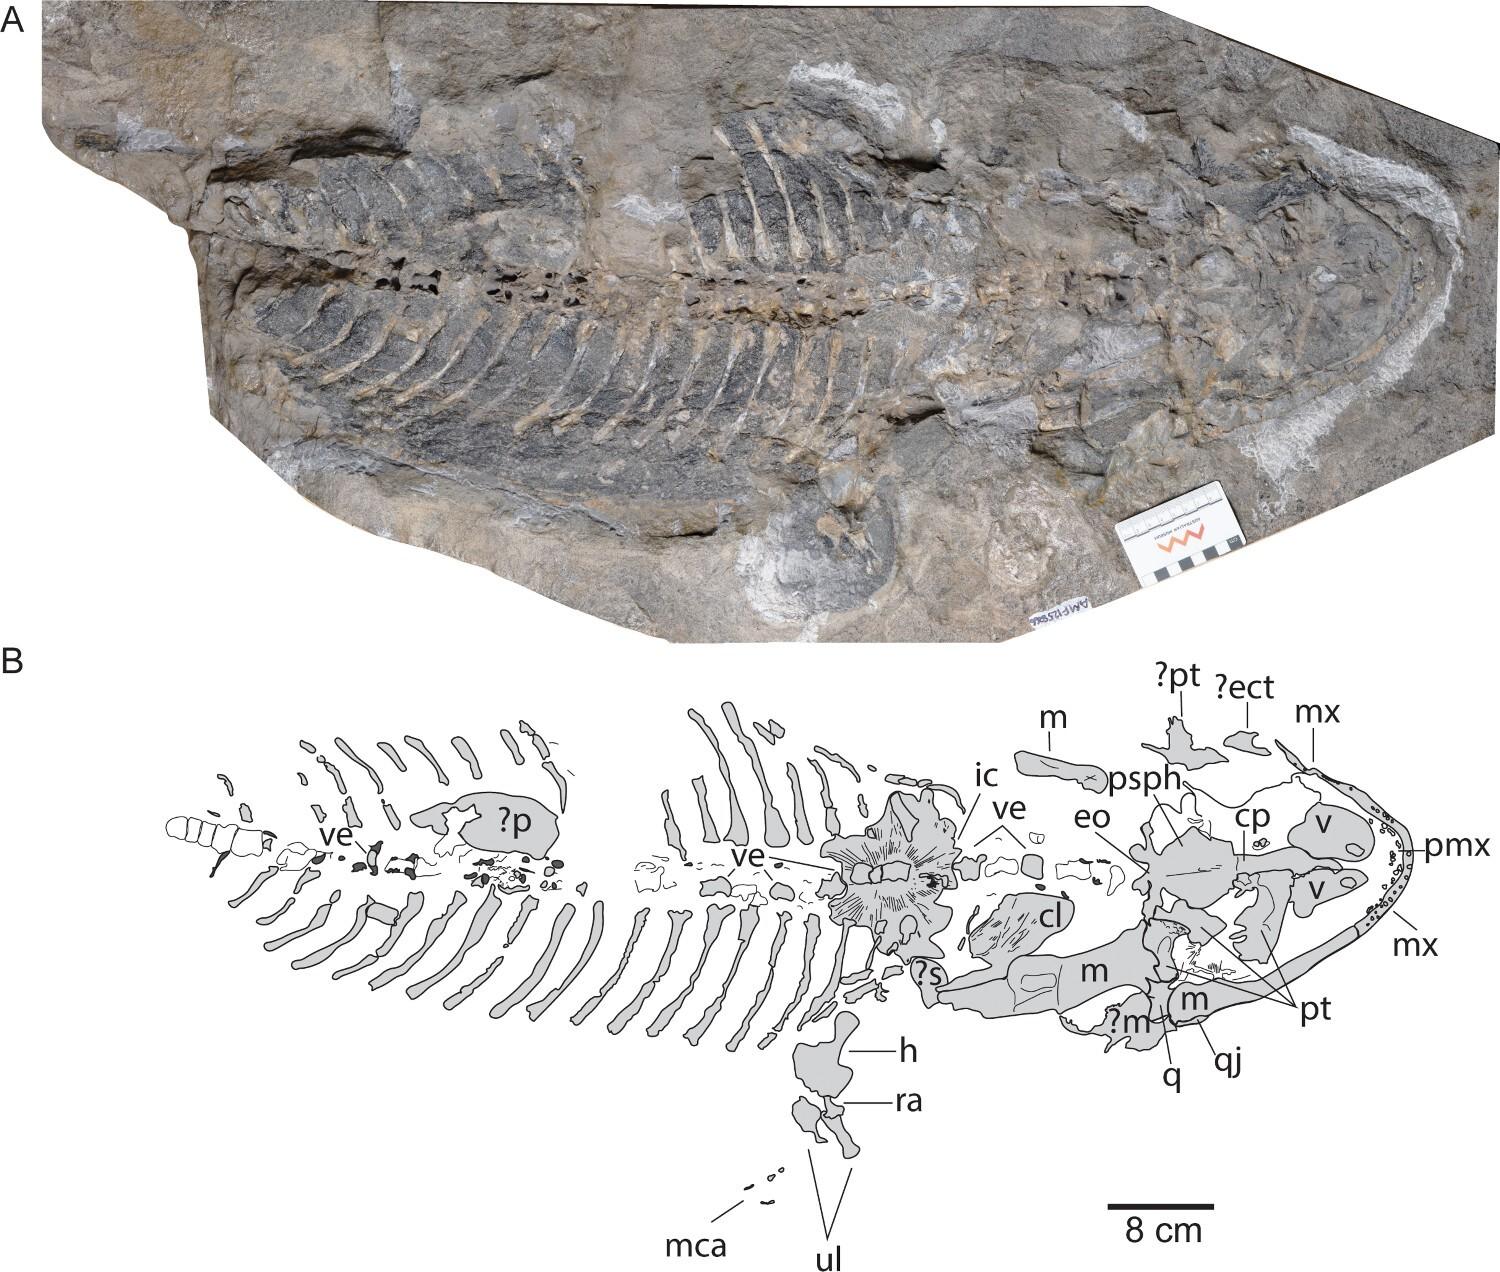 Arenaerpeton supinatus, AM F125866, scheletro articolato. A, pieno fossile in vista ventrale; B, interpretazione schematica.